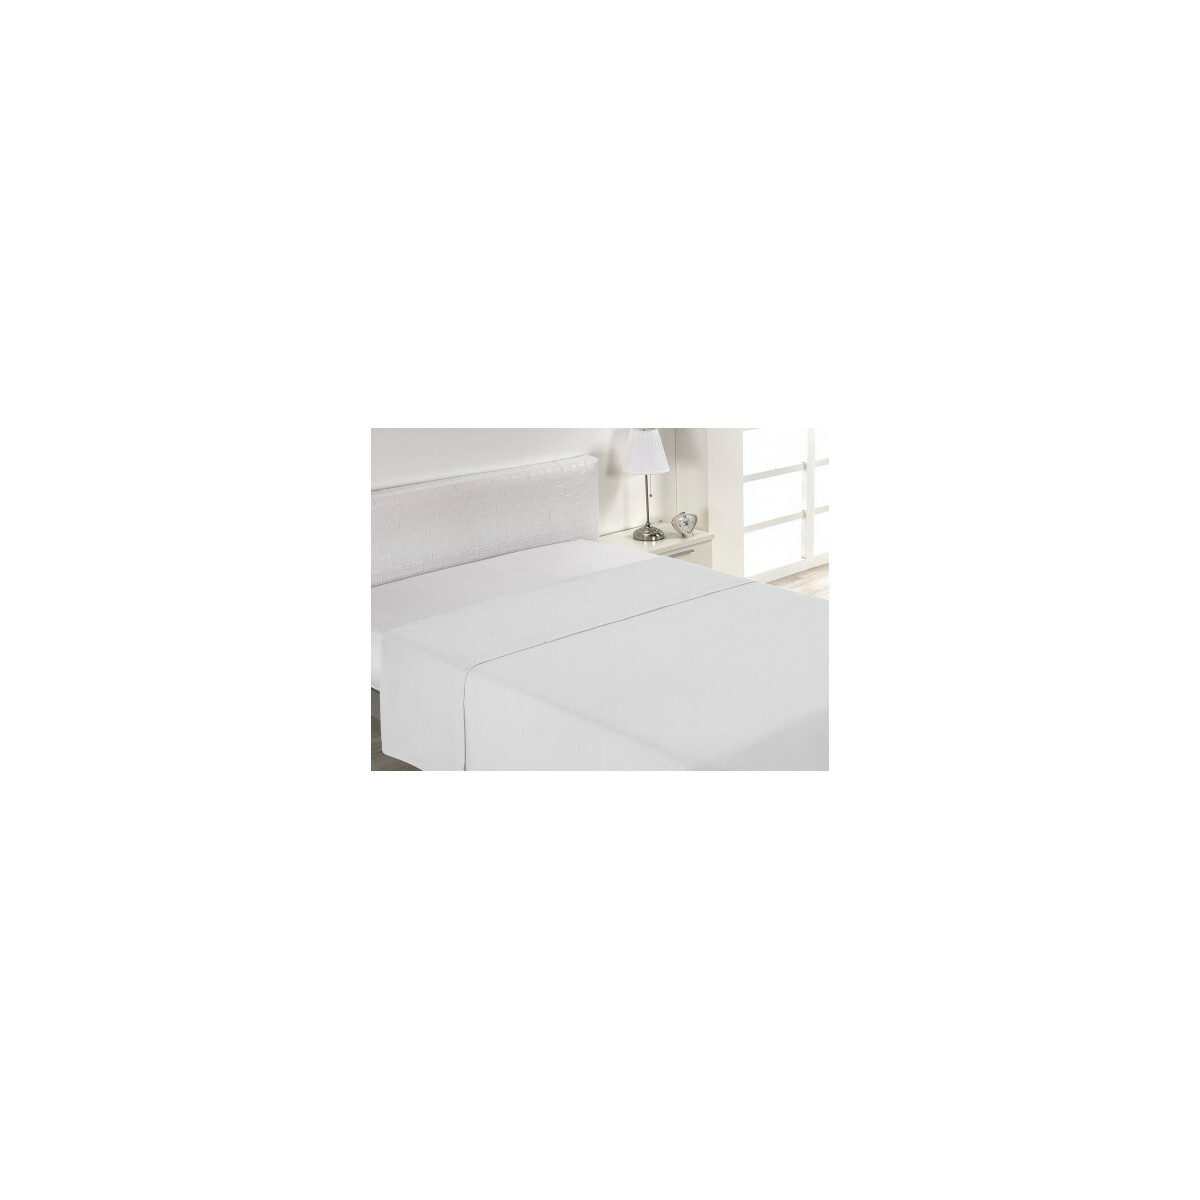 Bedsheet 220 x 290cm (135cm Bed)